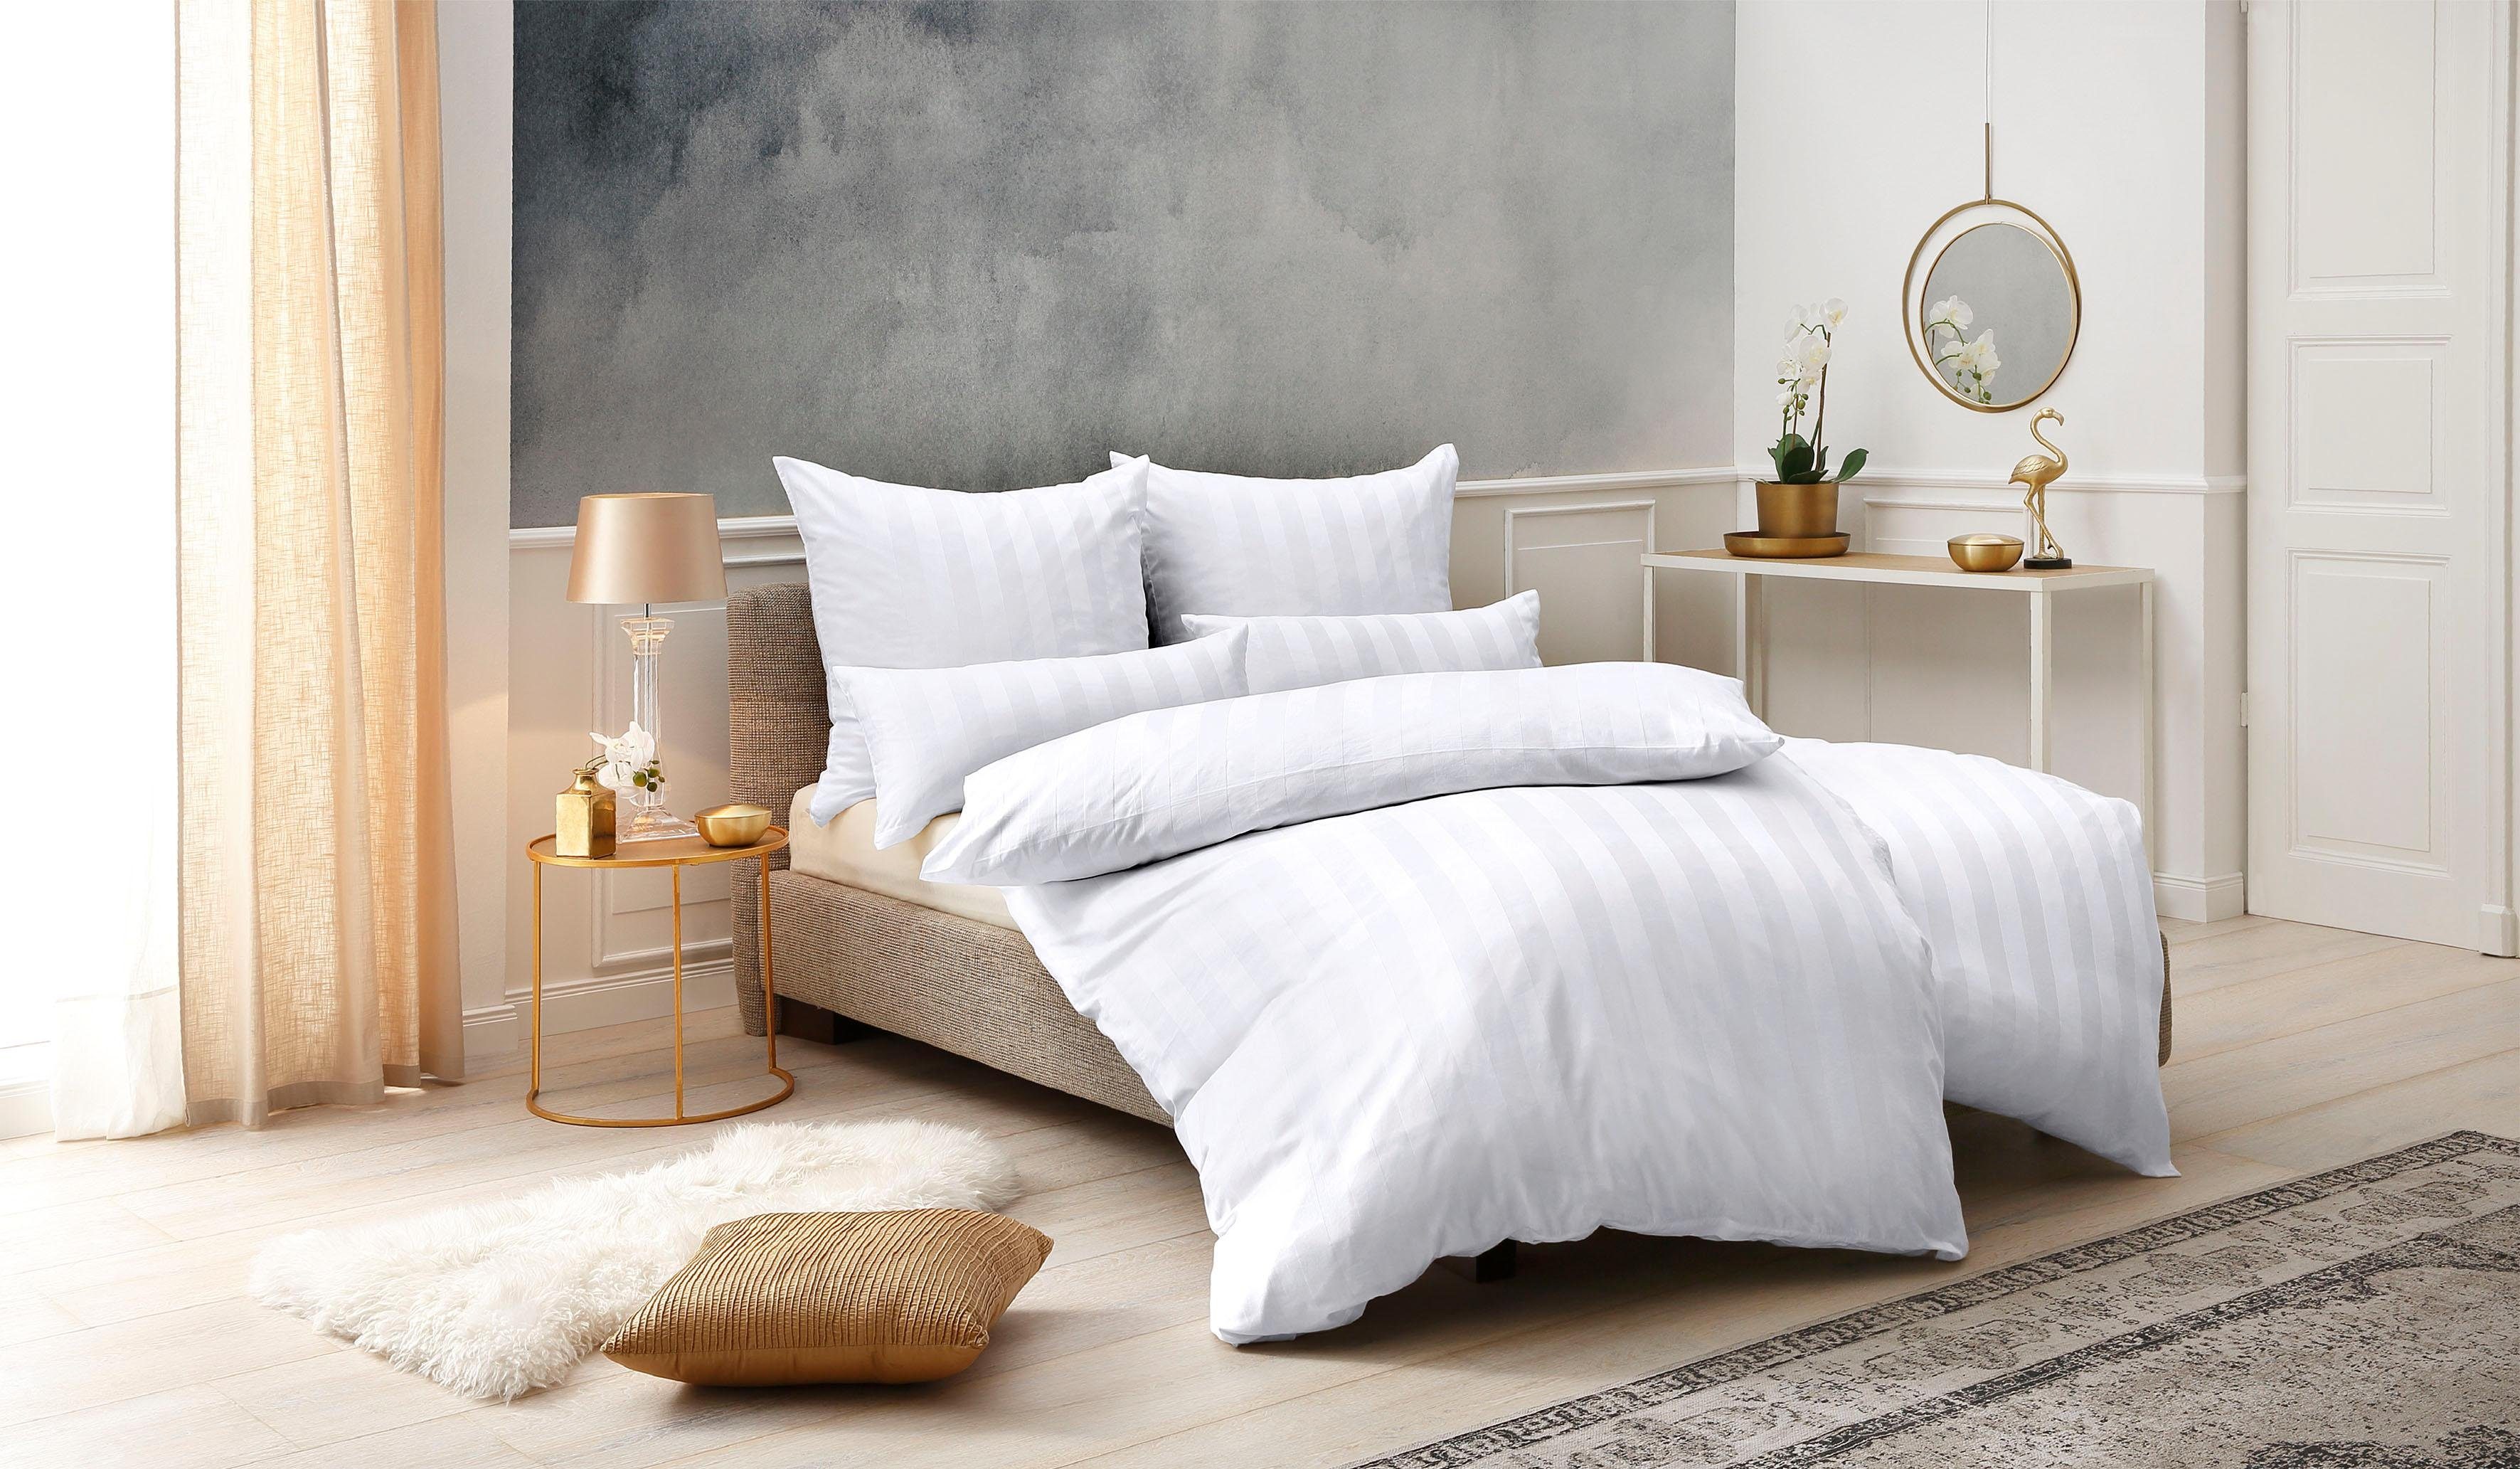 Bettwäsche Malia in Gr. oder 155x220 cm, Satin, aus Satin-Qualität Baumwolle, 135x200 teilig, in weiß Bettwäsche Bettwäsche zeitlose 2 Leonique